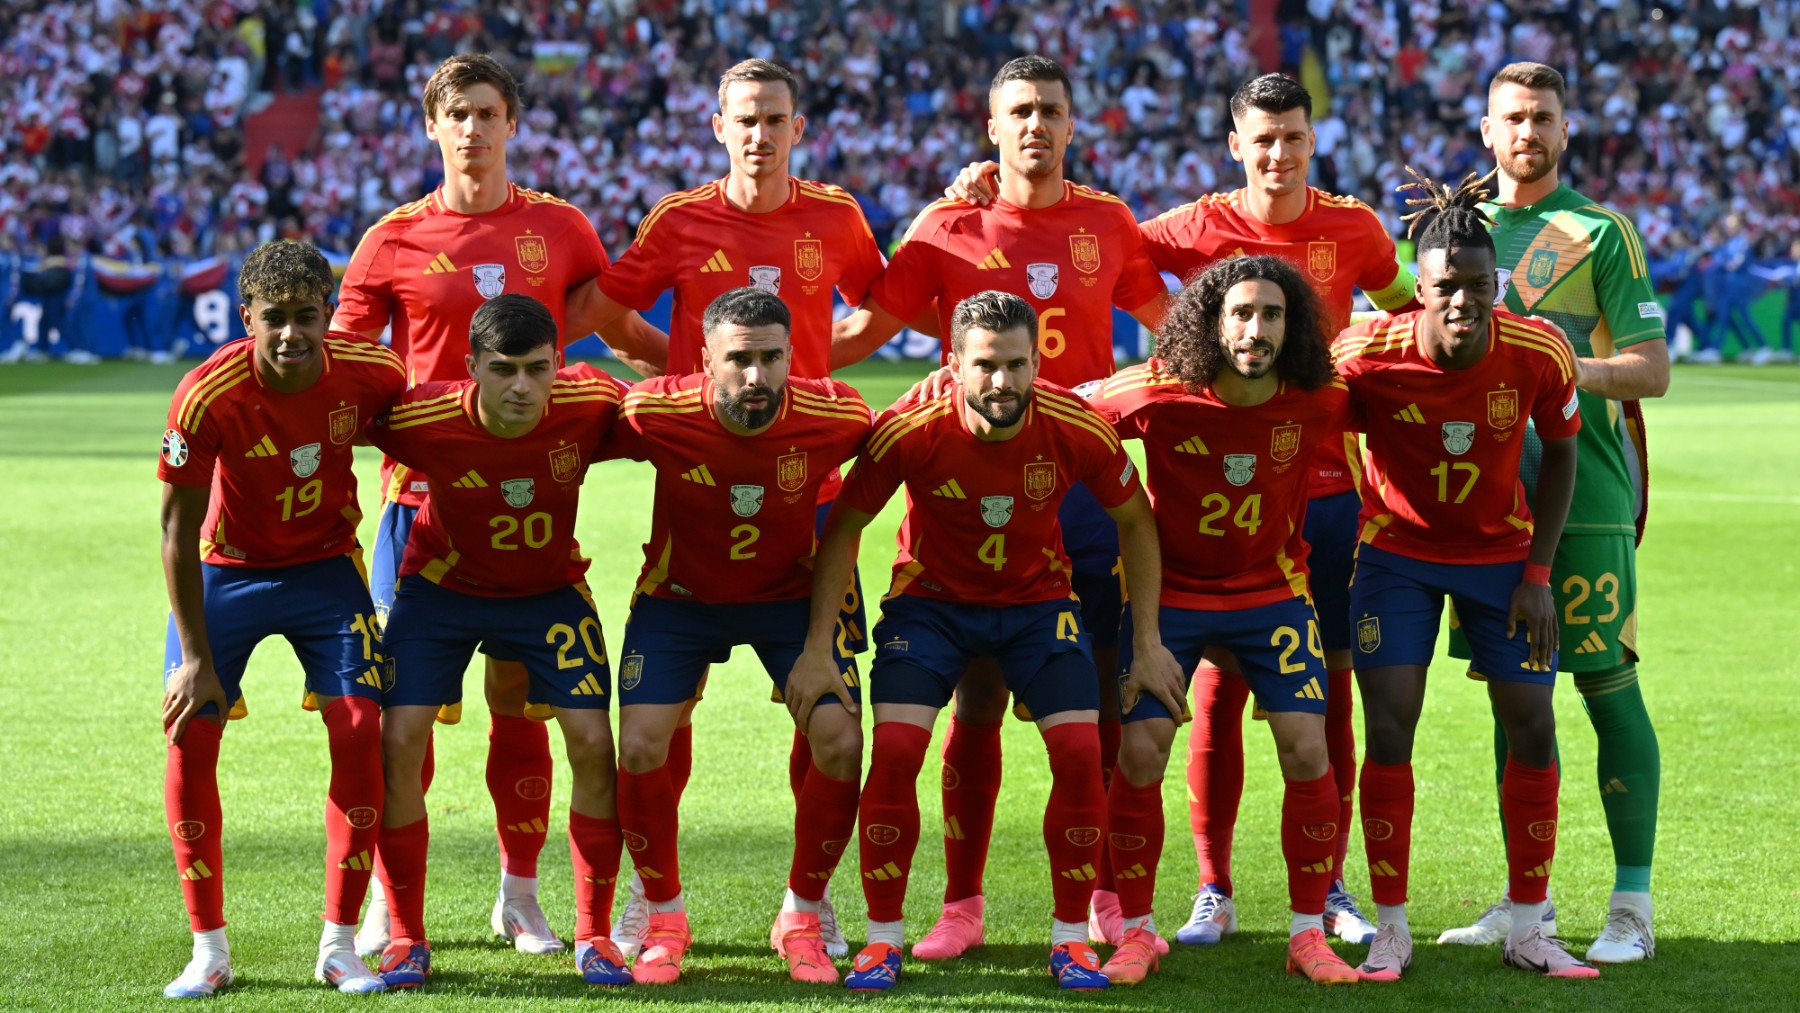 La alineación de España en un partido de la Eurocopa. (Getty)